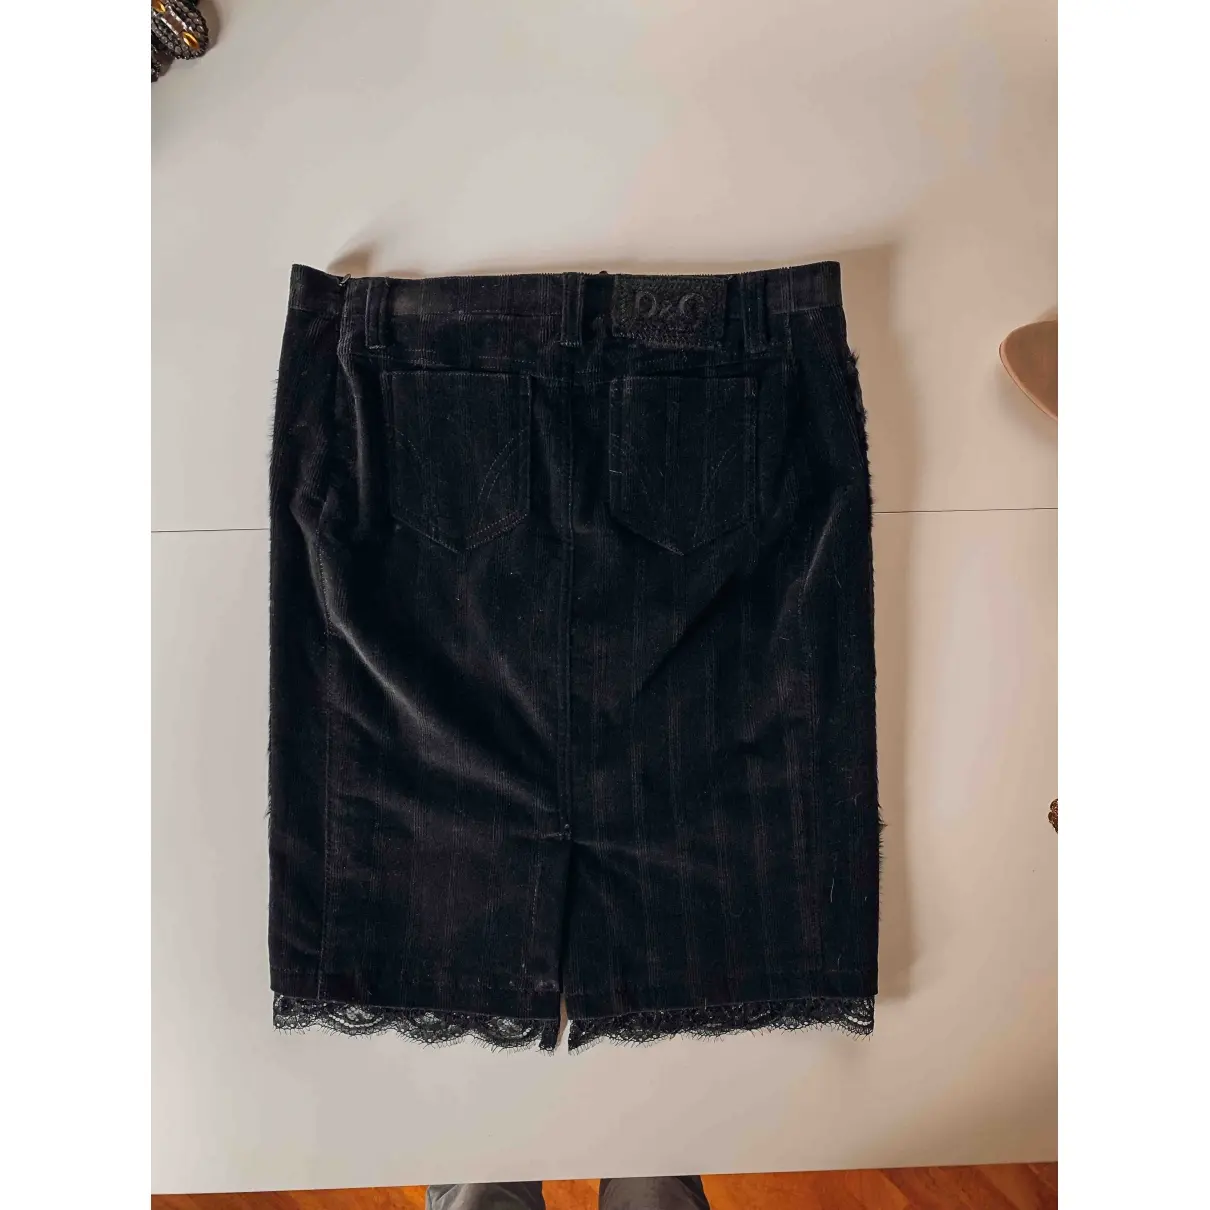 D&G Mid-length skirt for sale